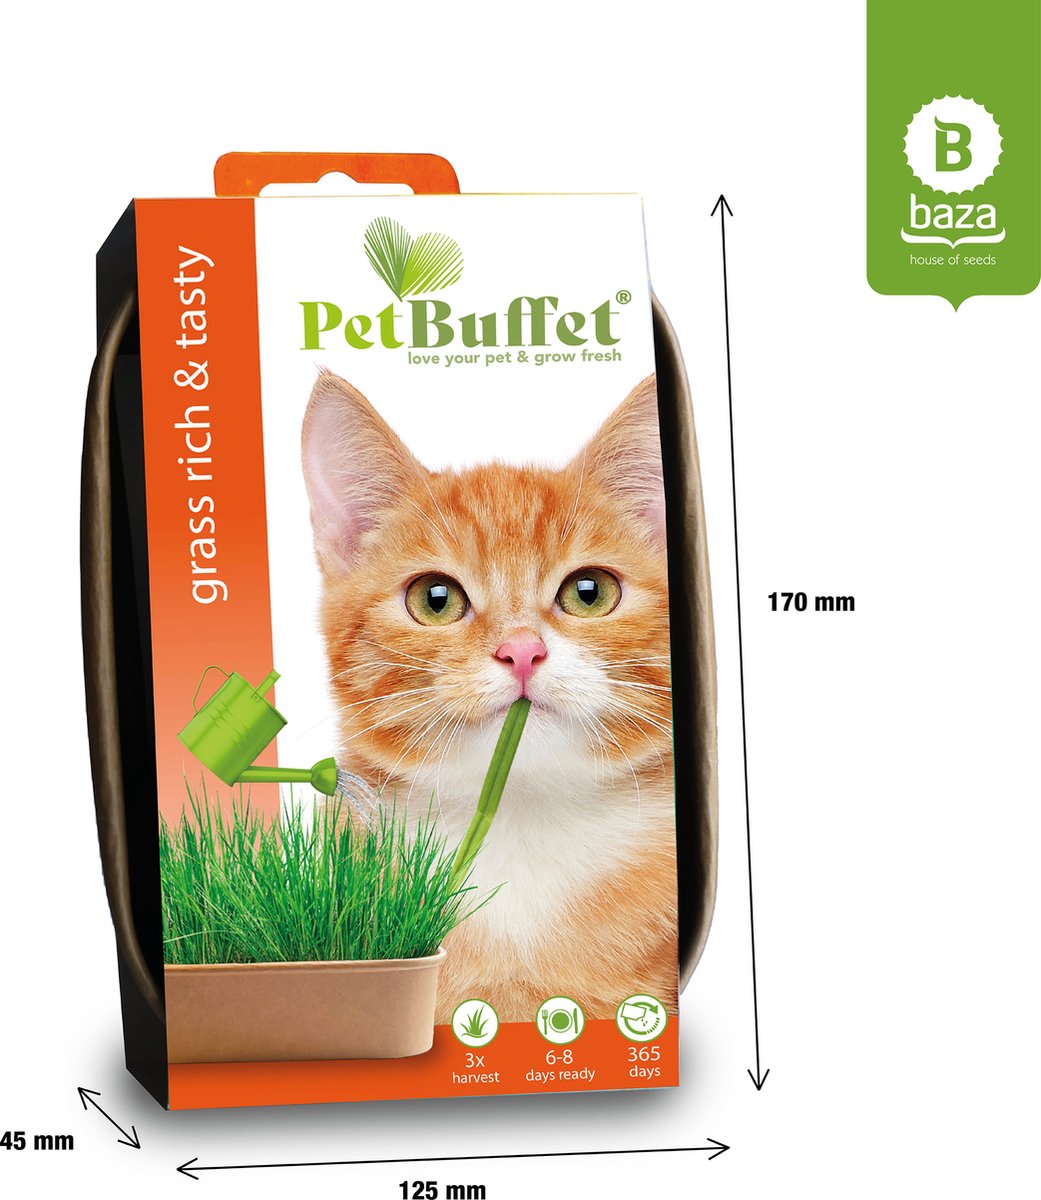 Pet-Buffet herbe riche et savoureuse 6x croissance herbe pour votre chat